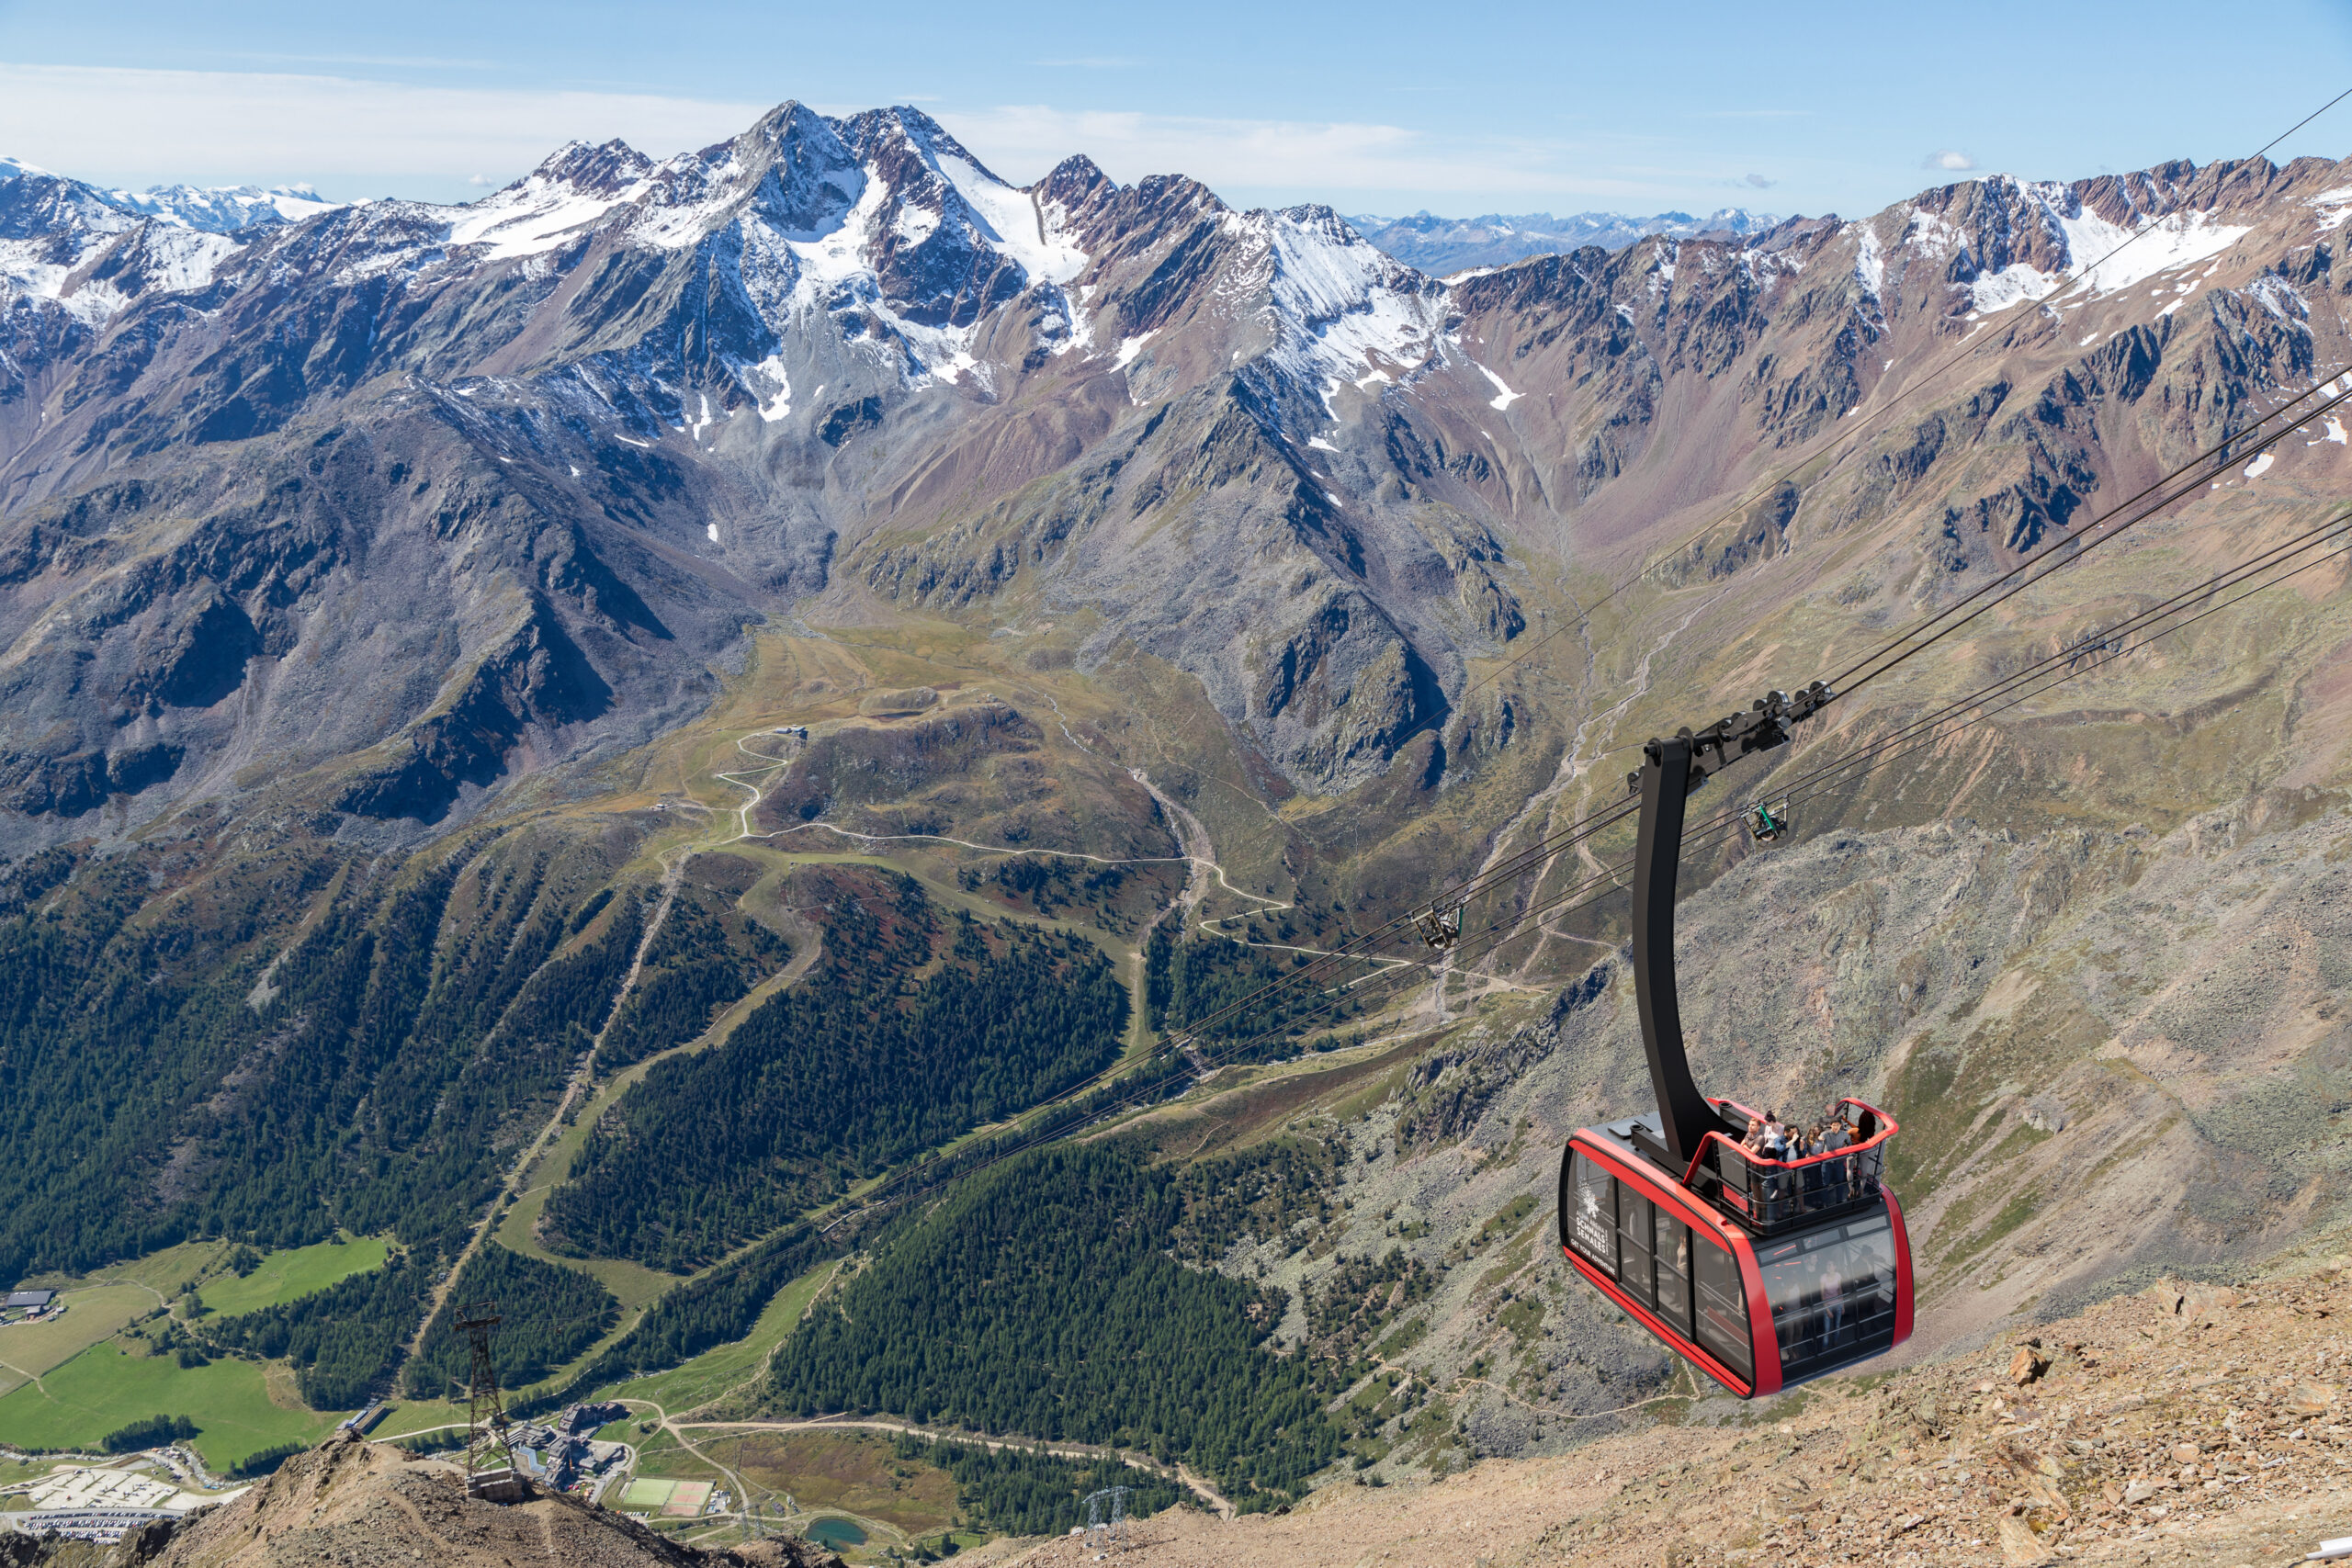 Alpine arena senales, funivia Cabrio-Highlight mit der neuen Gletscherseilbahn (copyright natdesign)